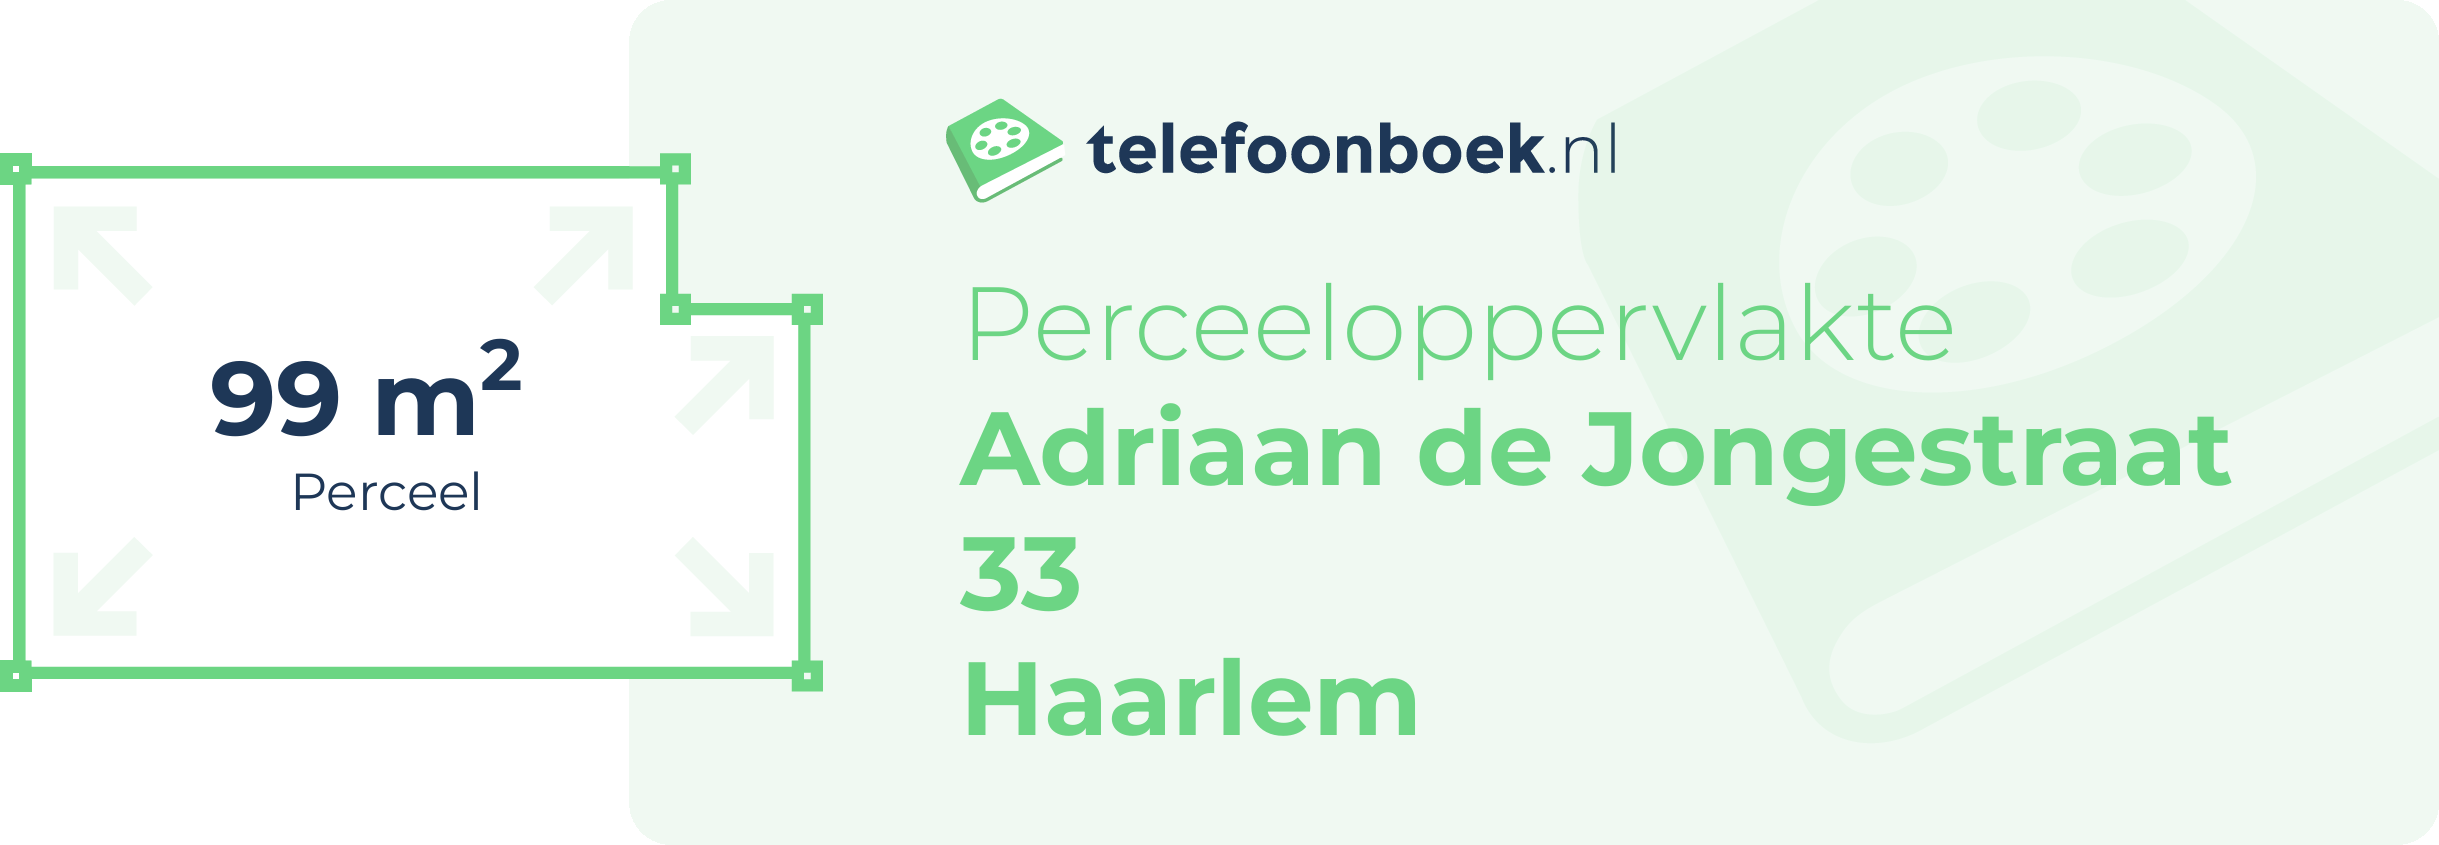 Perceeloppervlakte Adriaan De Jongestraat 33 Haarlem